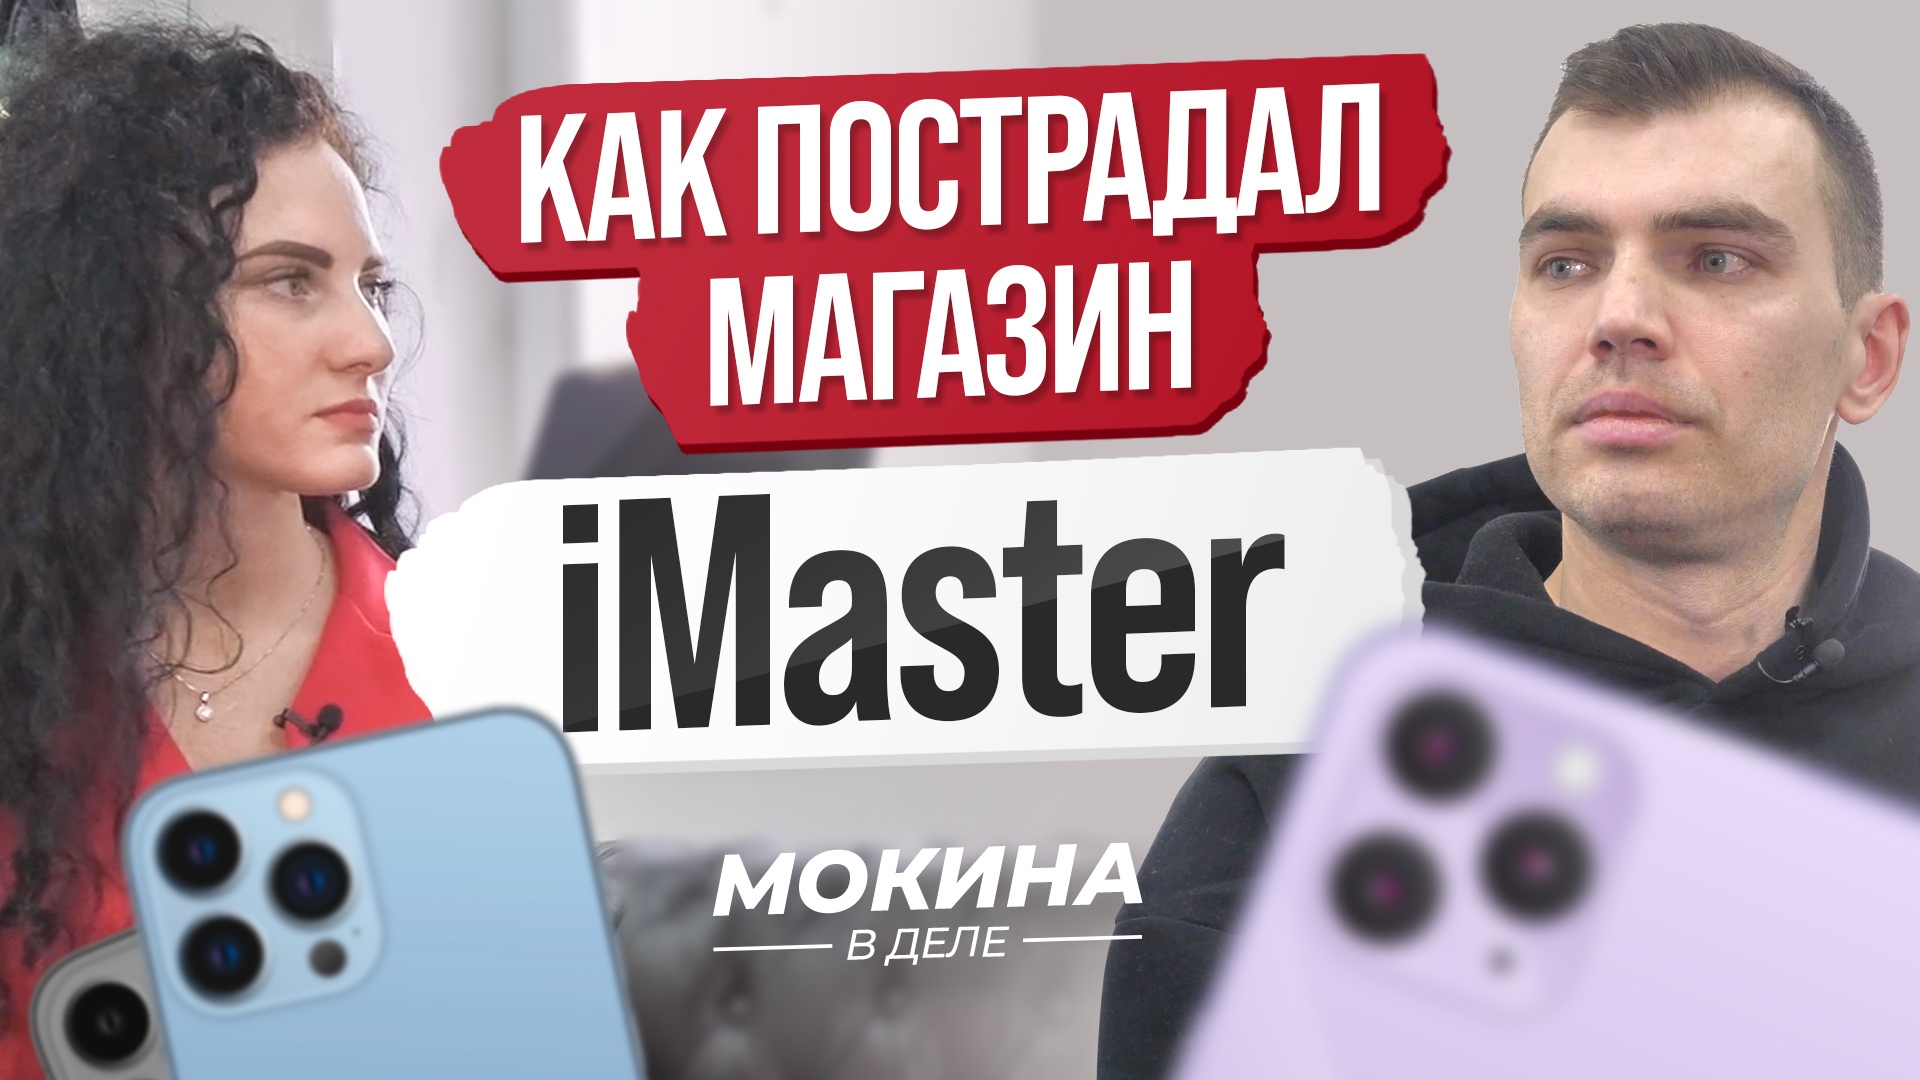 #СПЕЦВЫПУСК: Как пострадал магазин iMaster?